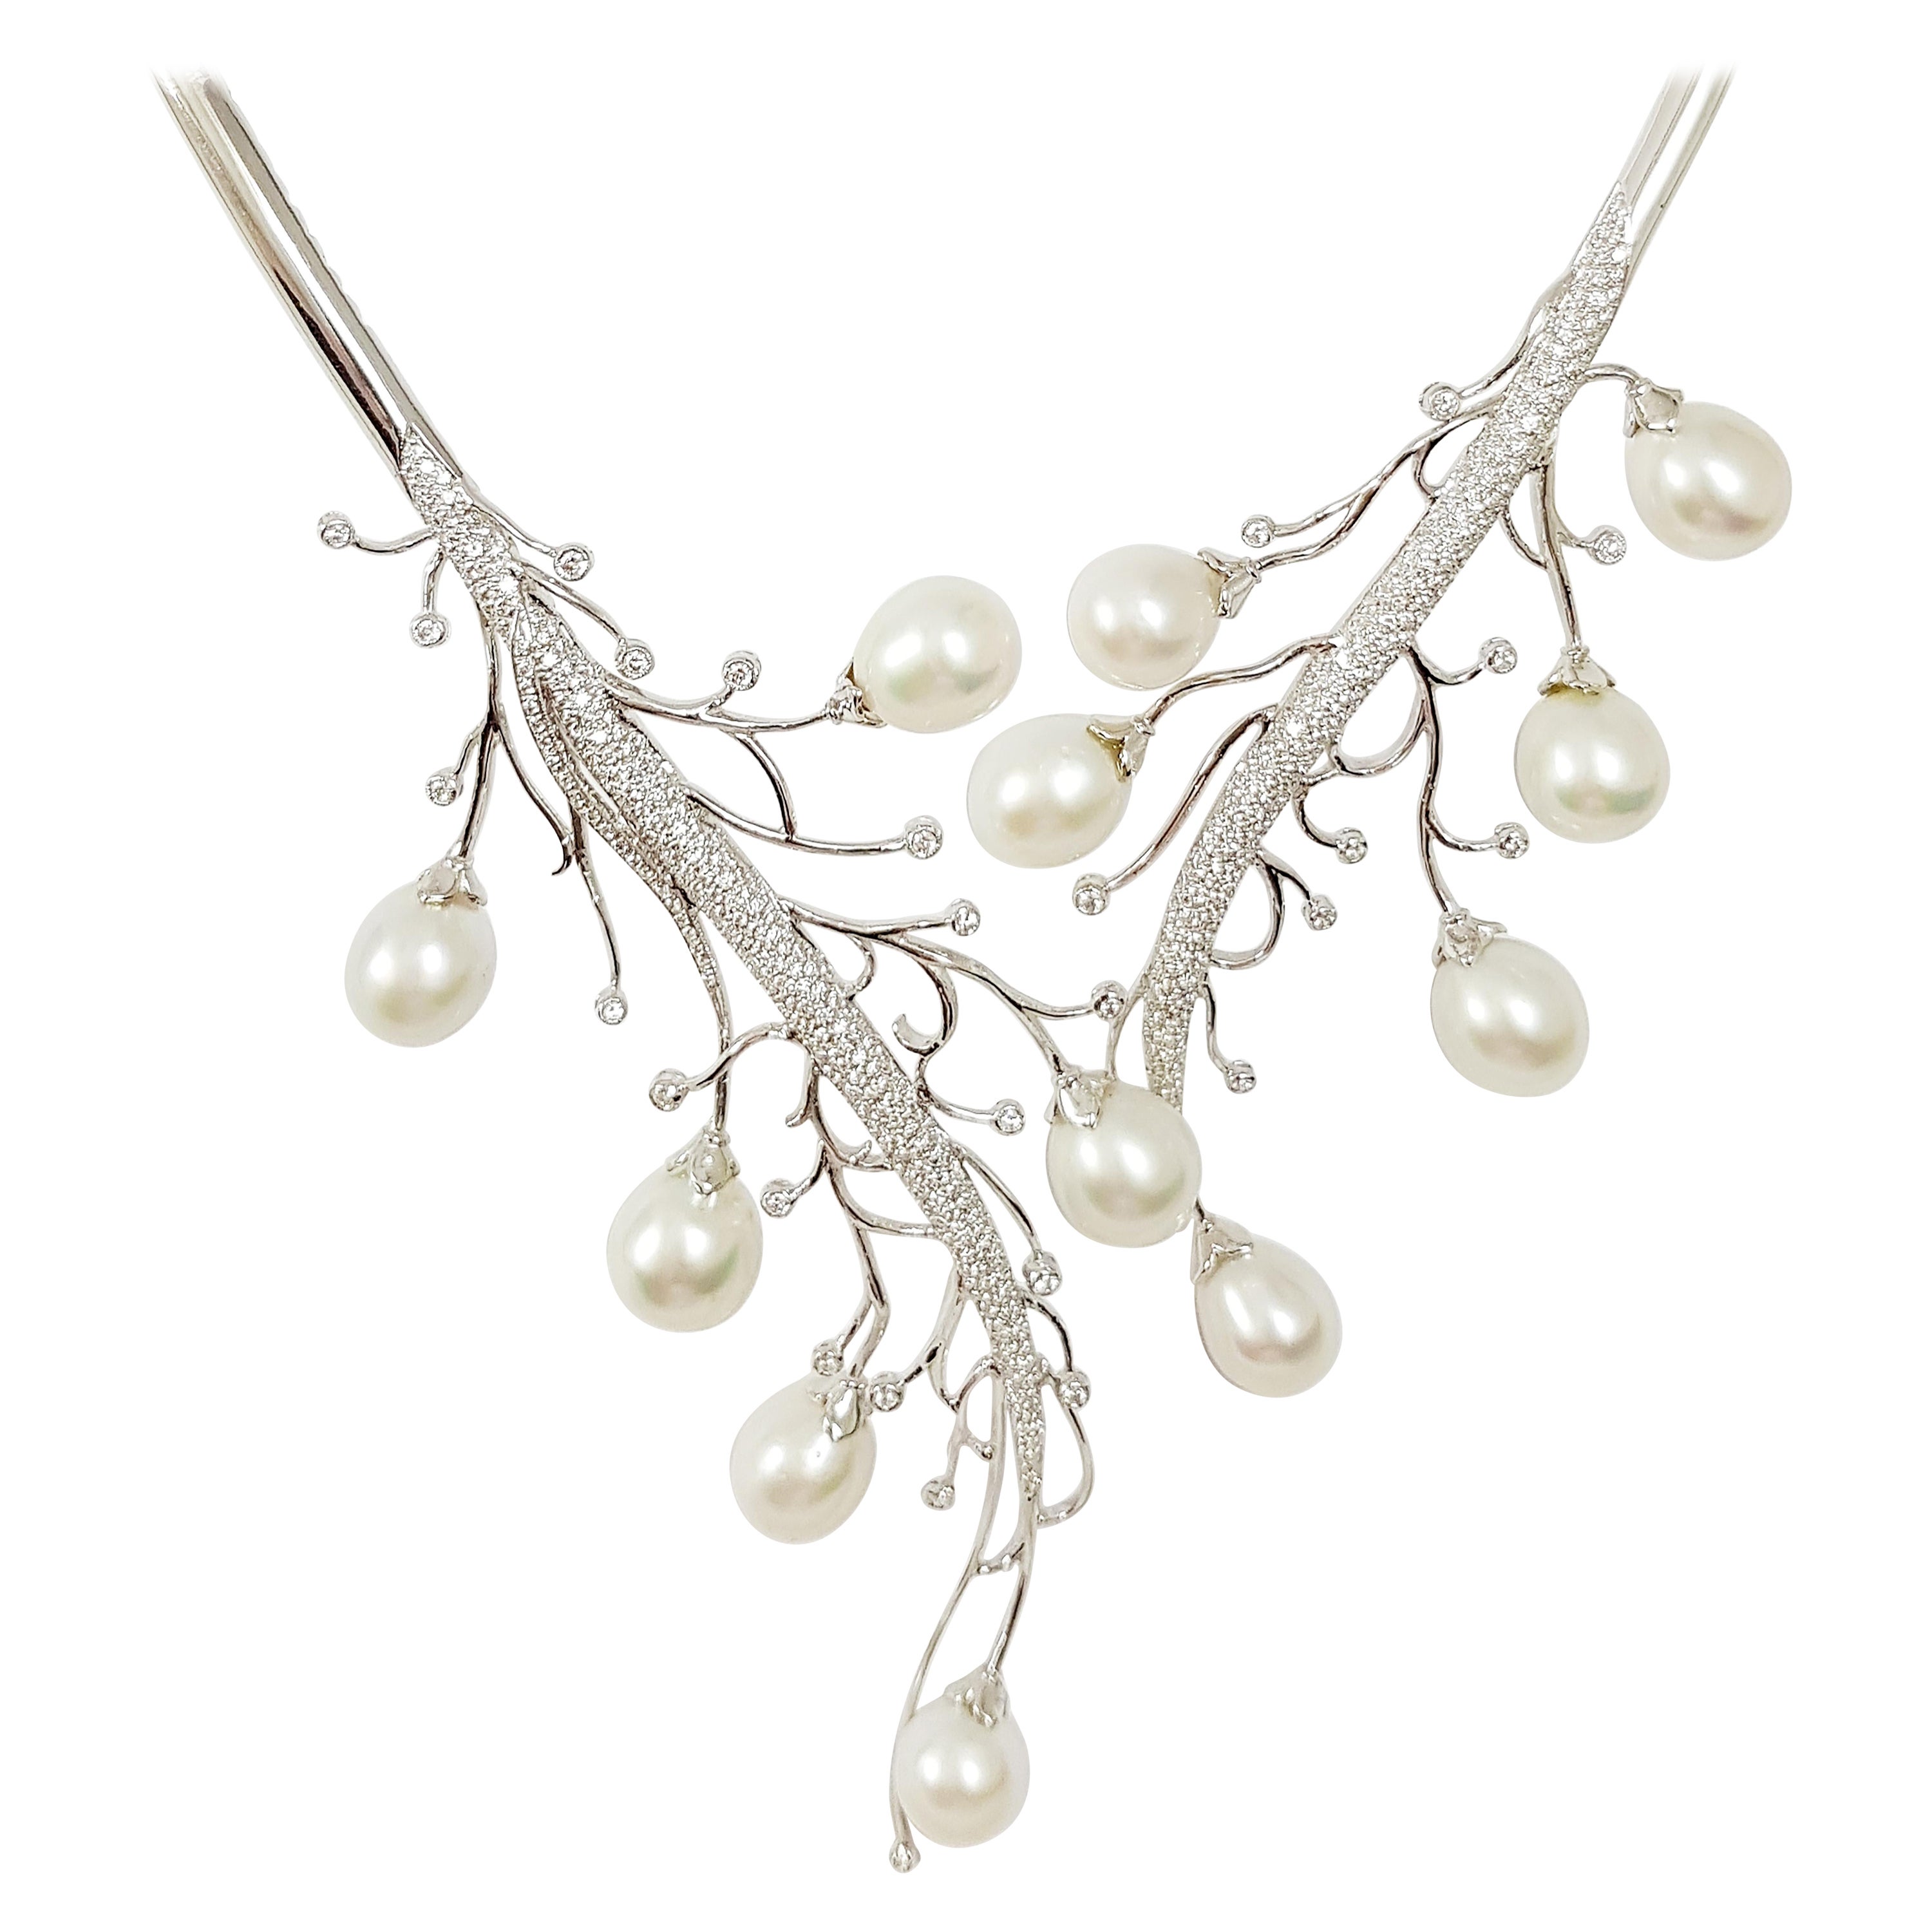 Collier de perles des mers du Sud avec vigne en diamants, serti dans des montures en or blanc 18 carats